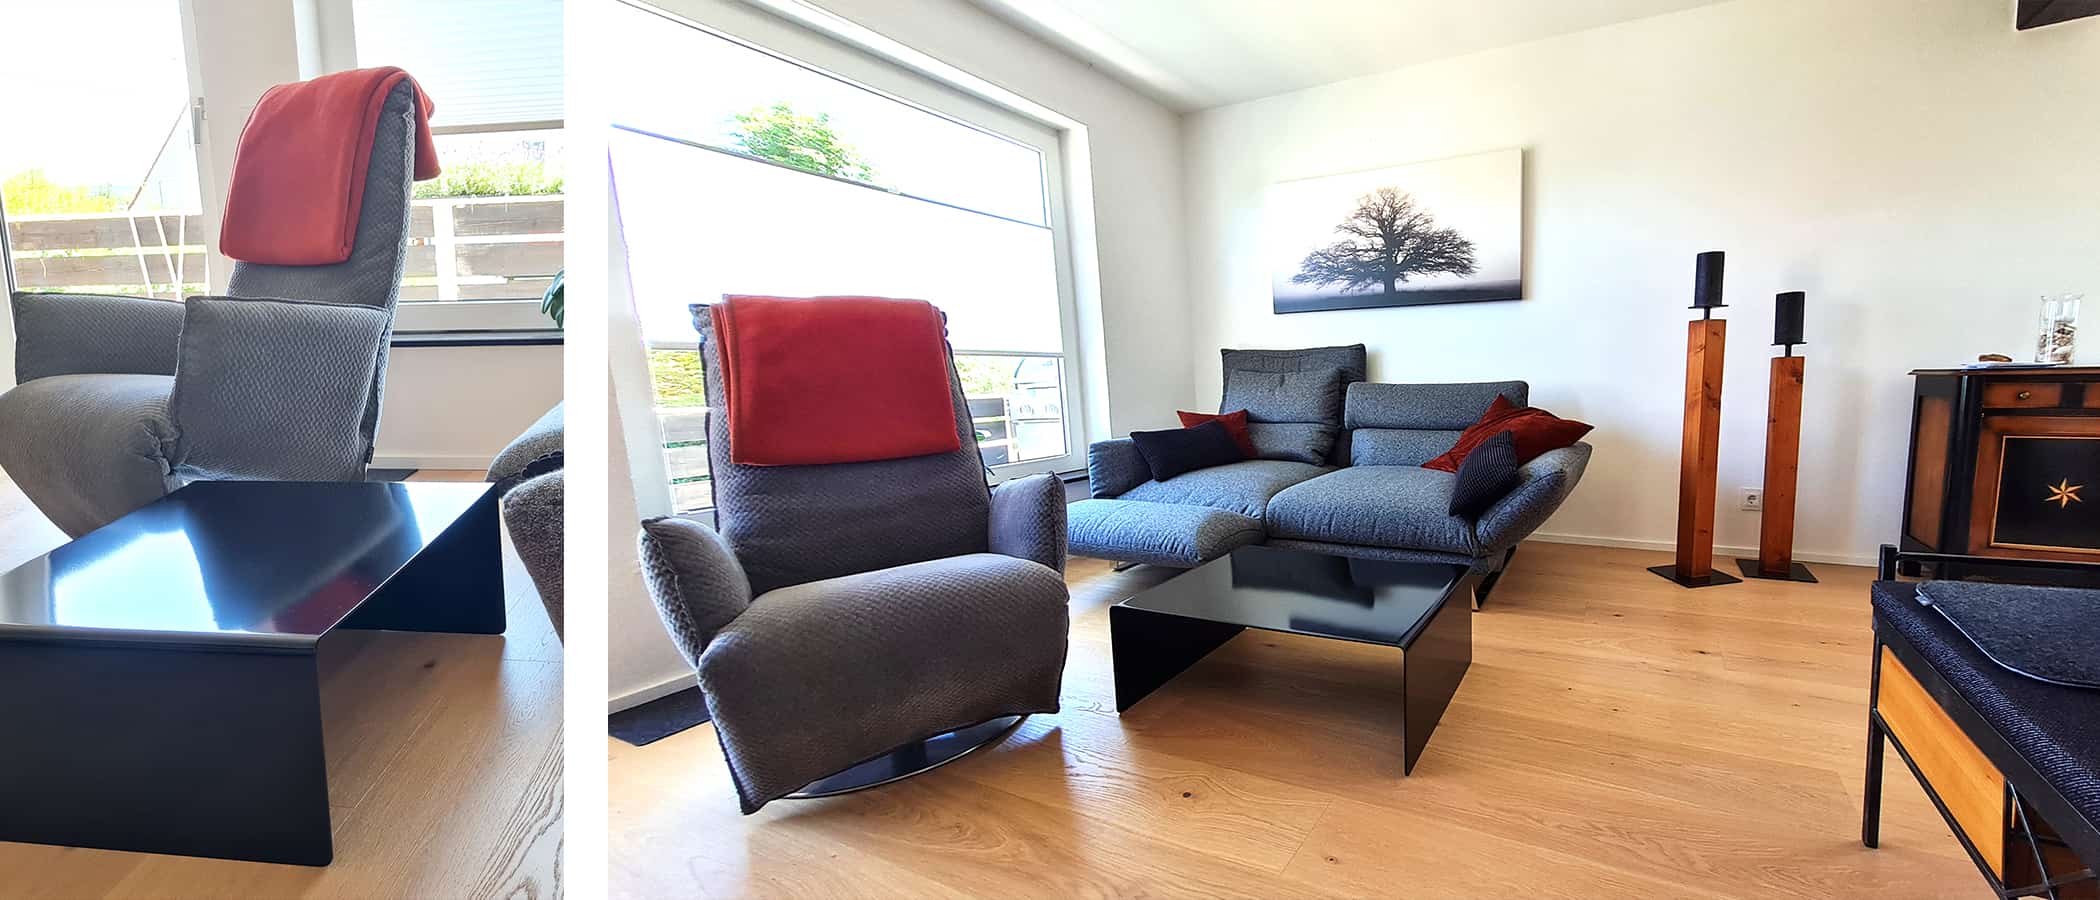 industrial-moebel-style-design-stahlzart-couchtisch-rund-schwarz-metall-modern-quadratisch-designer-minimalistisch-wohnzimmer-sessel-sofa-ideen